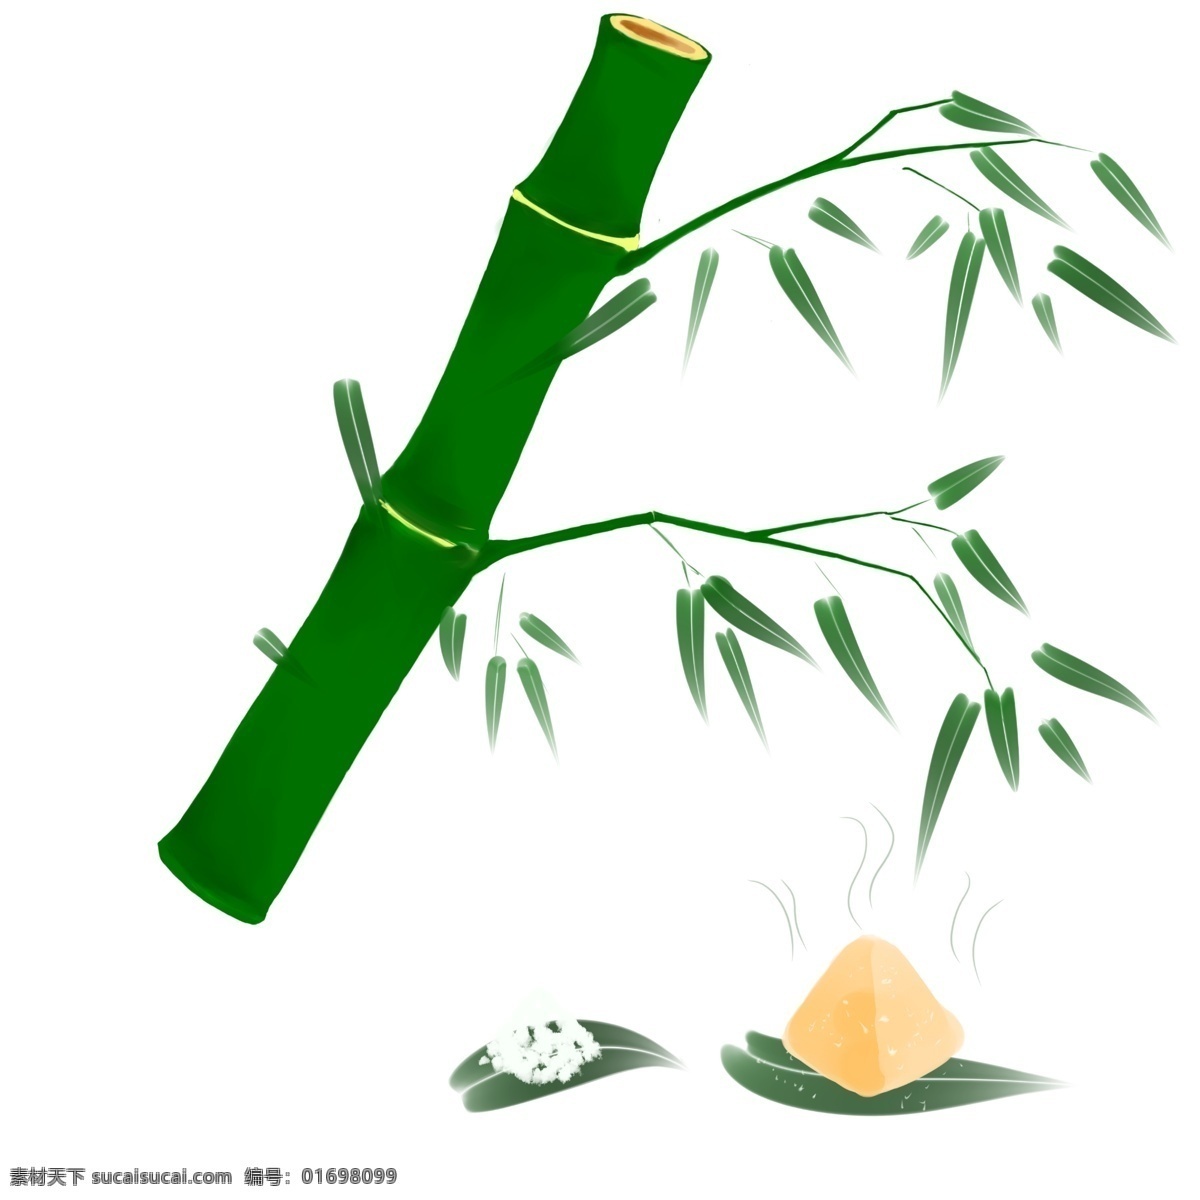 绿色 竹子 装饰 插画 绿色的竹子 绿色的叶子 黄色的粽子 竹子装饰 竹子插画 立体竹子 卡通竹子